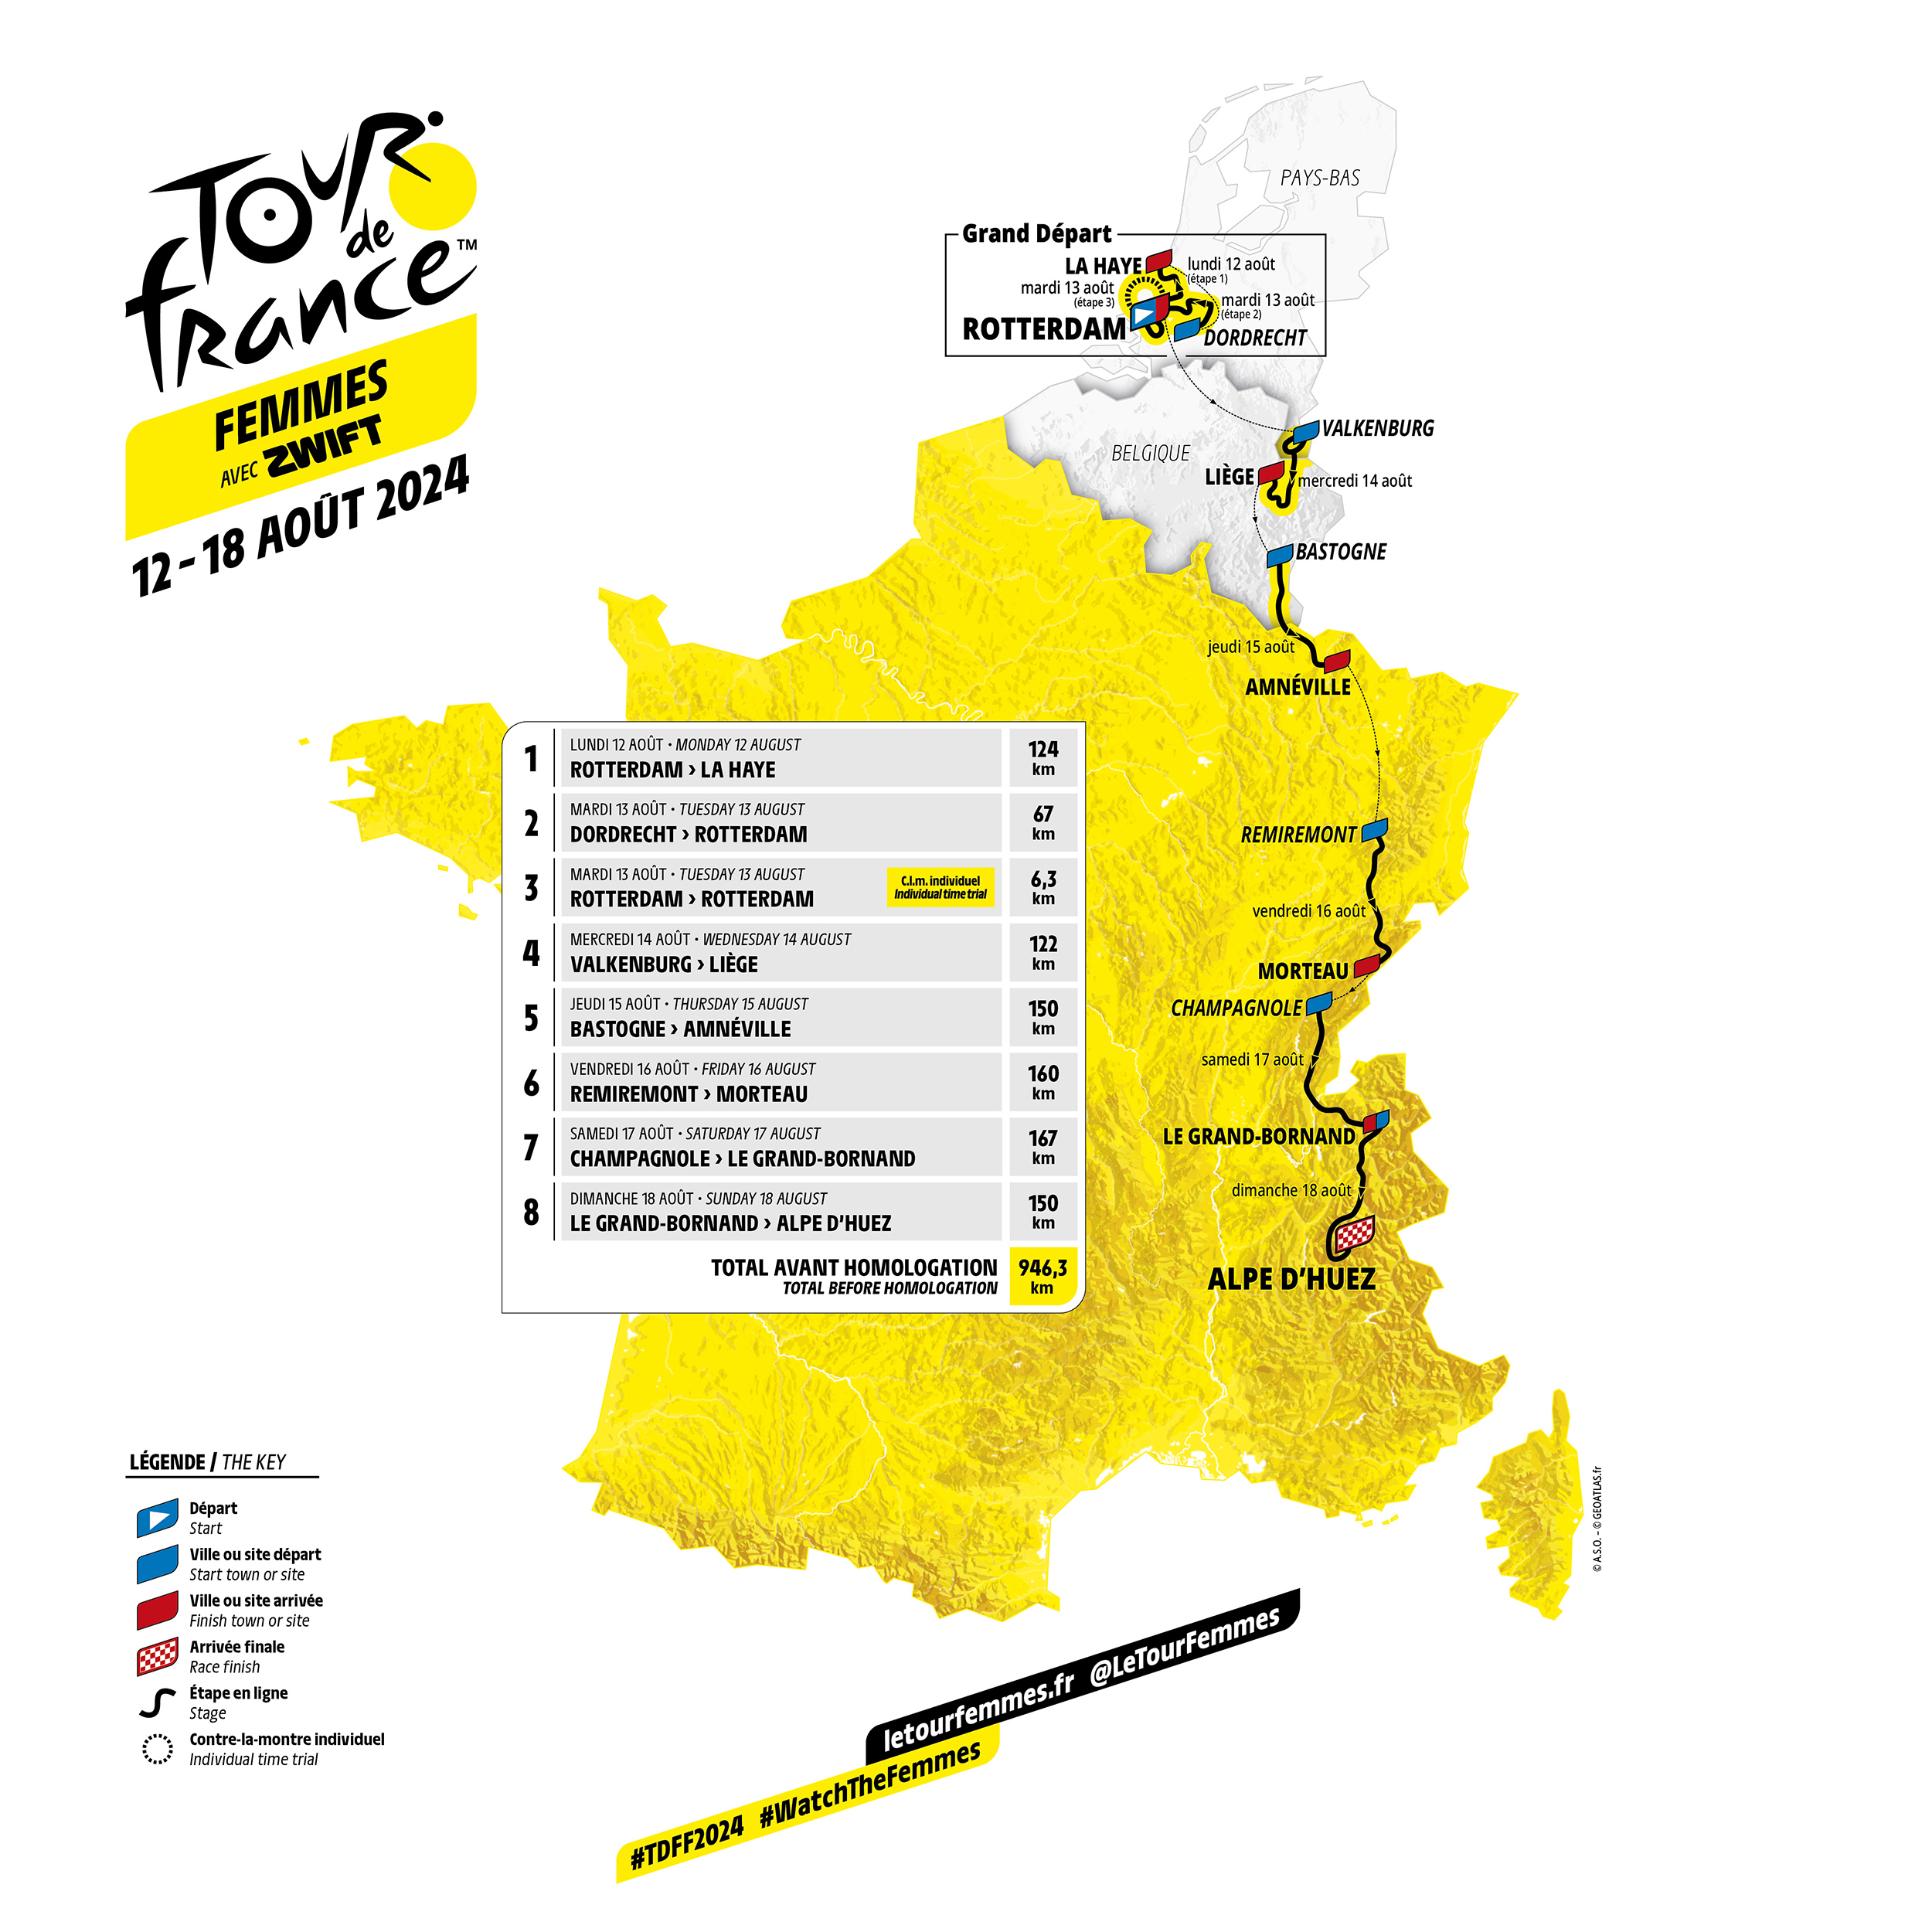 Tour de France Femmes 2024 Route Preview Heading up the Alpe d’Huez!